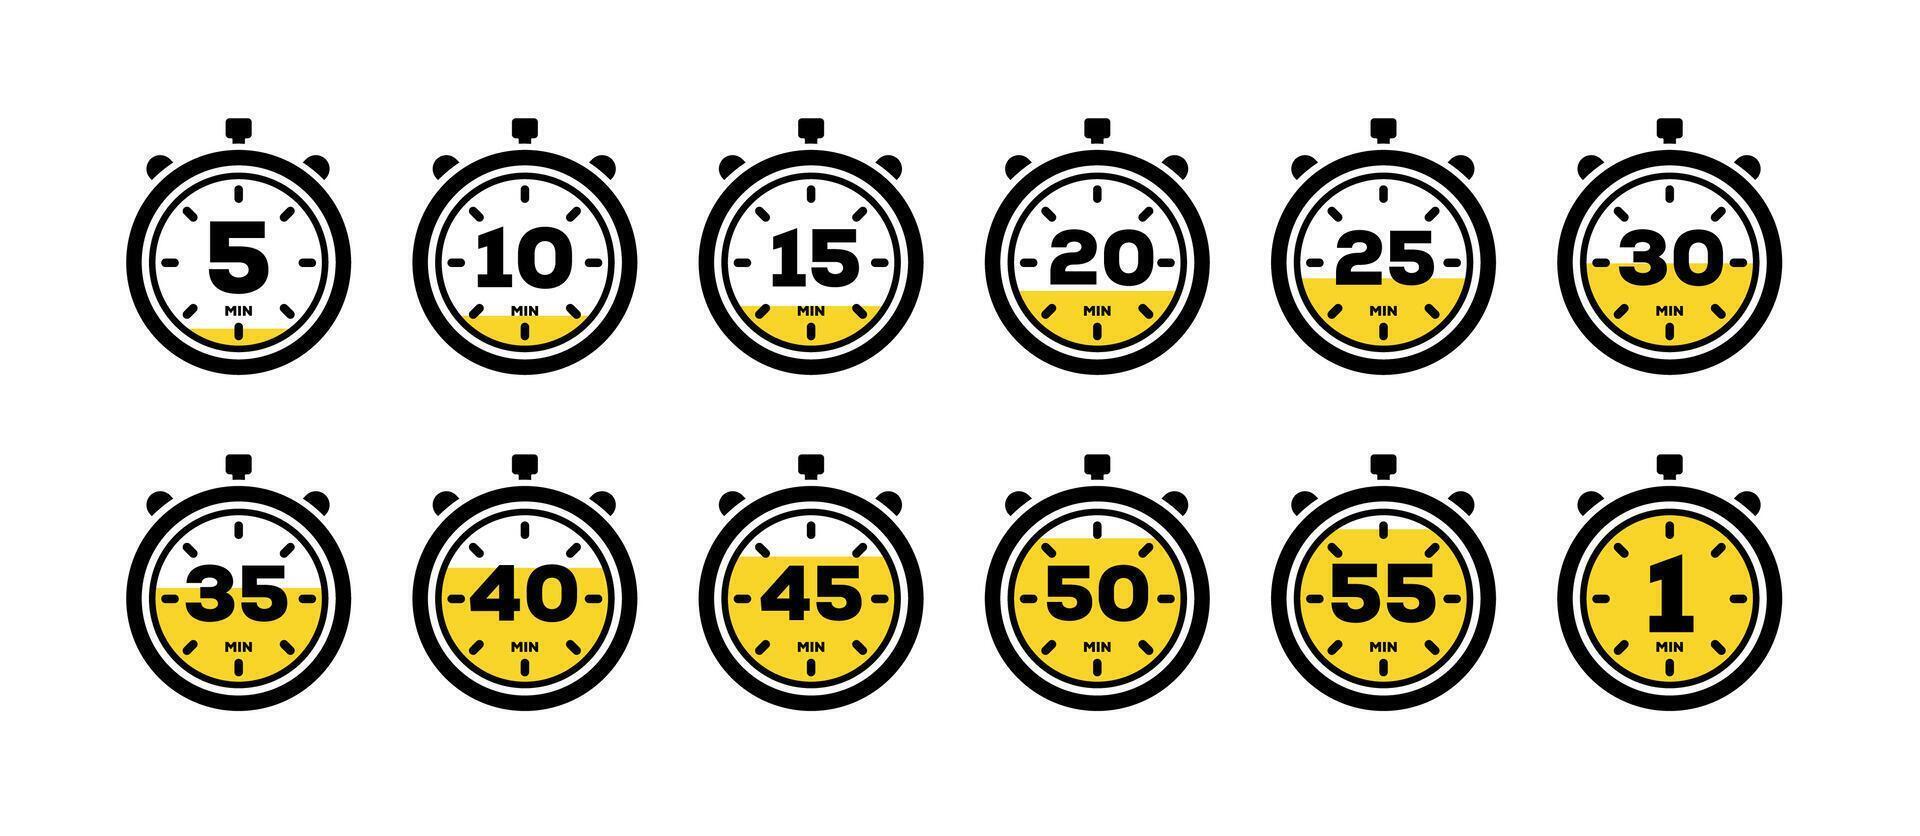 uppsättning av timer och stoppur ikoner. kök timer ikon med annorlunda minuter. matlagning tid symboler och etiketter vektor